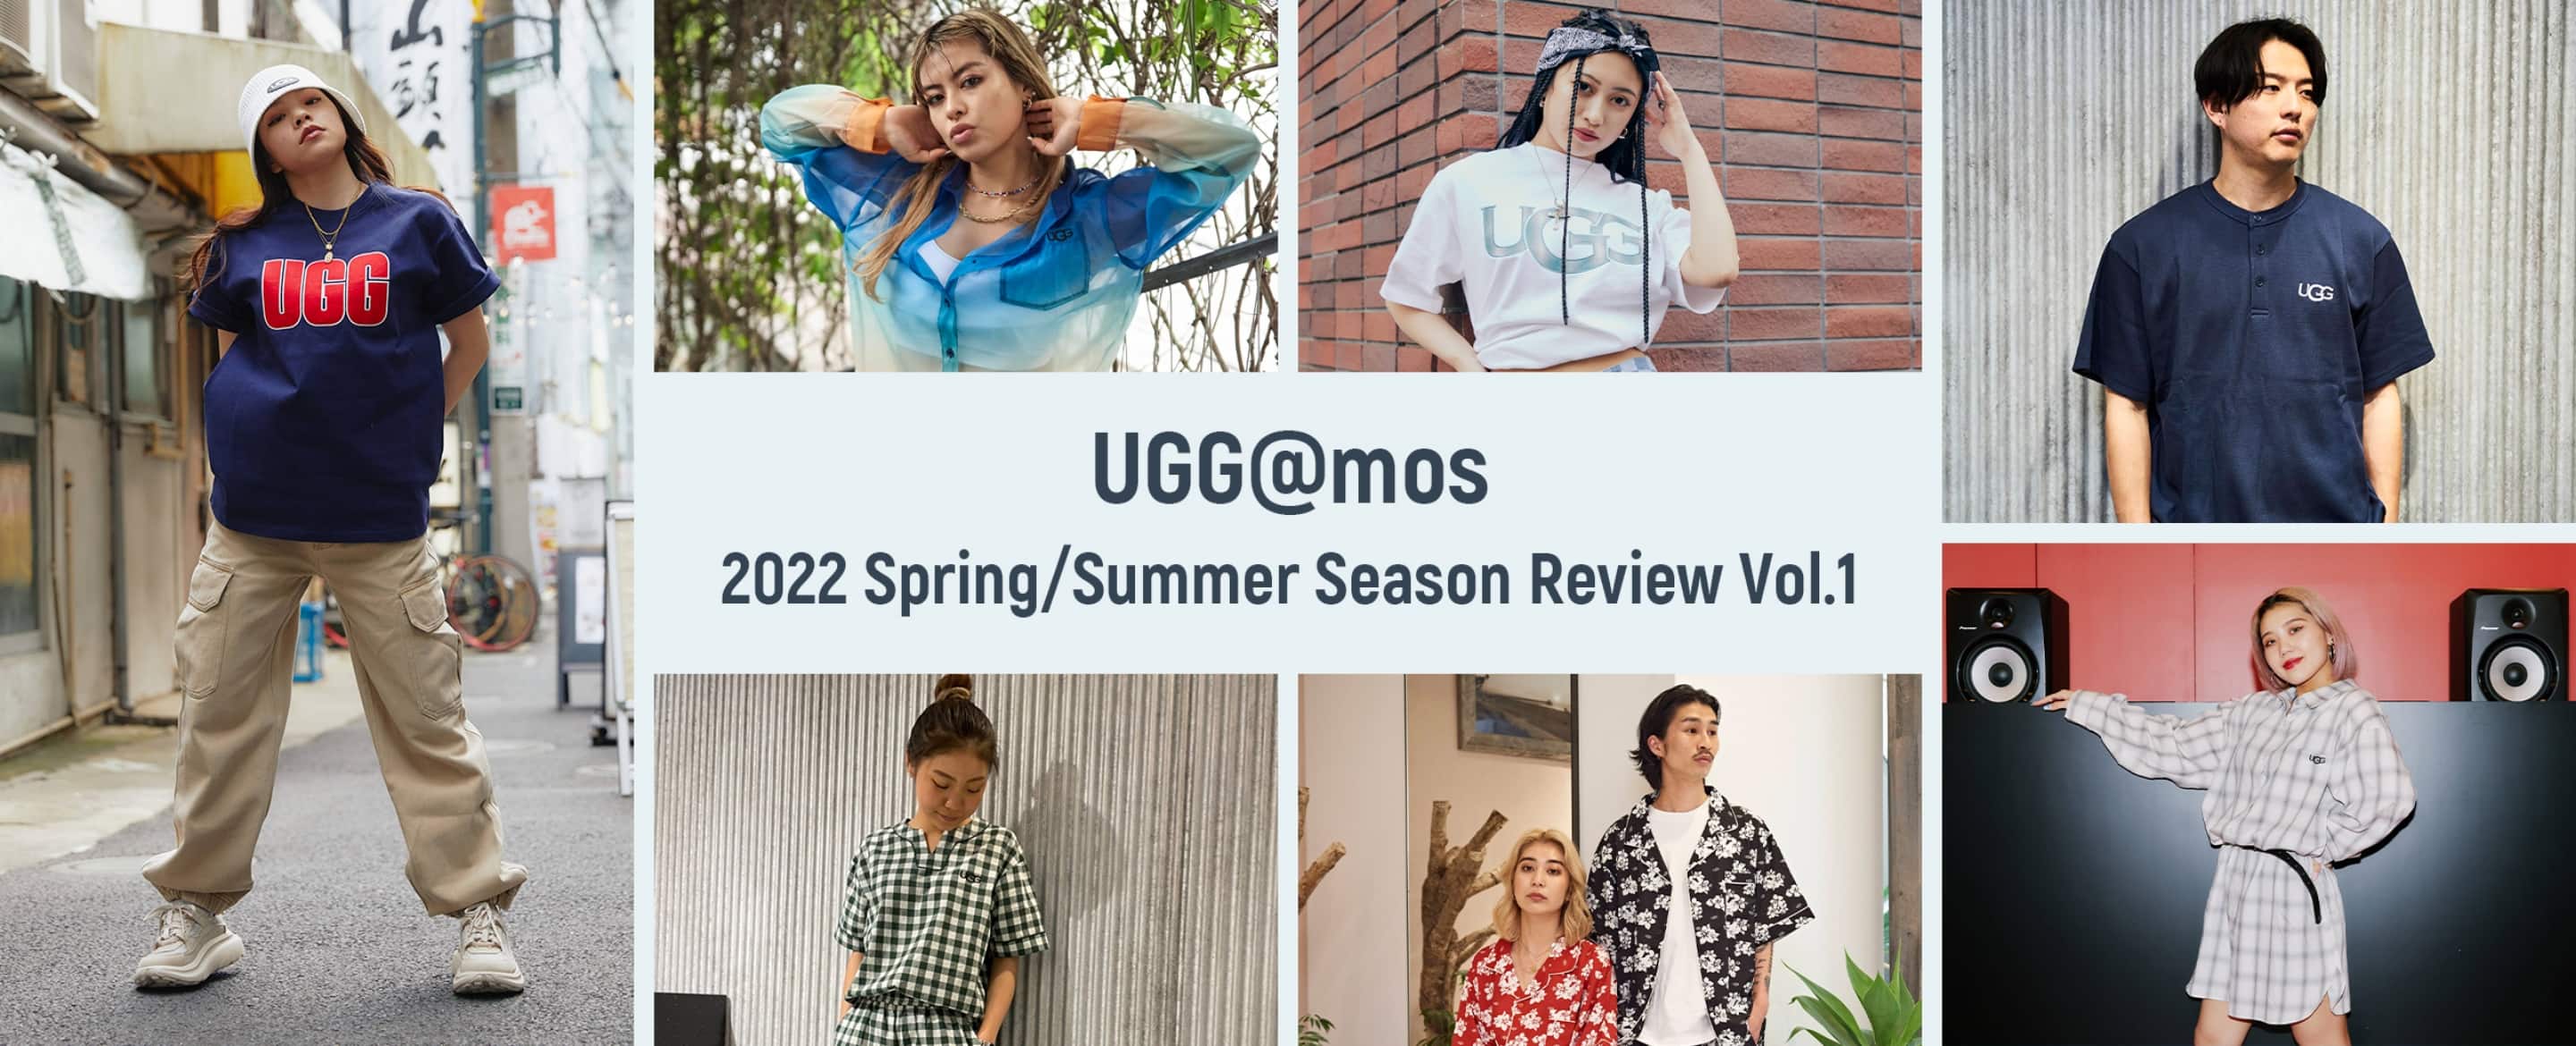 UGG@mos 2022 Spring/Summer Season Review Vol.1